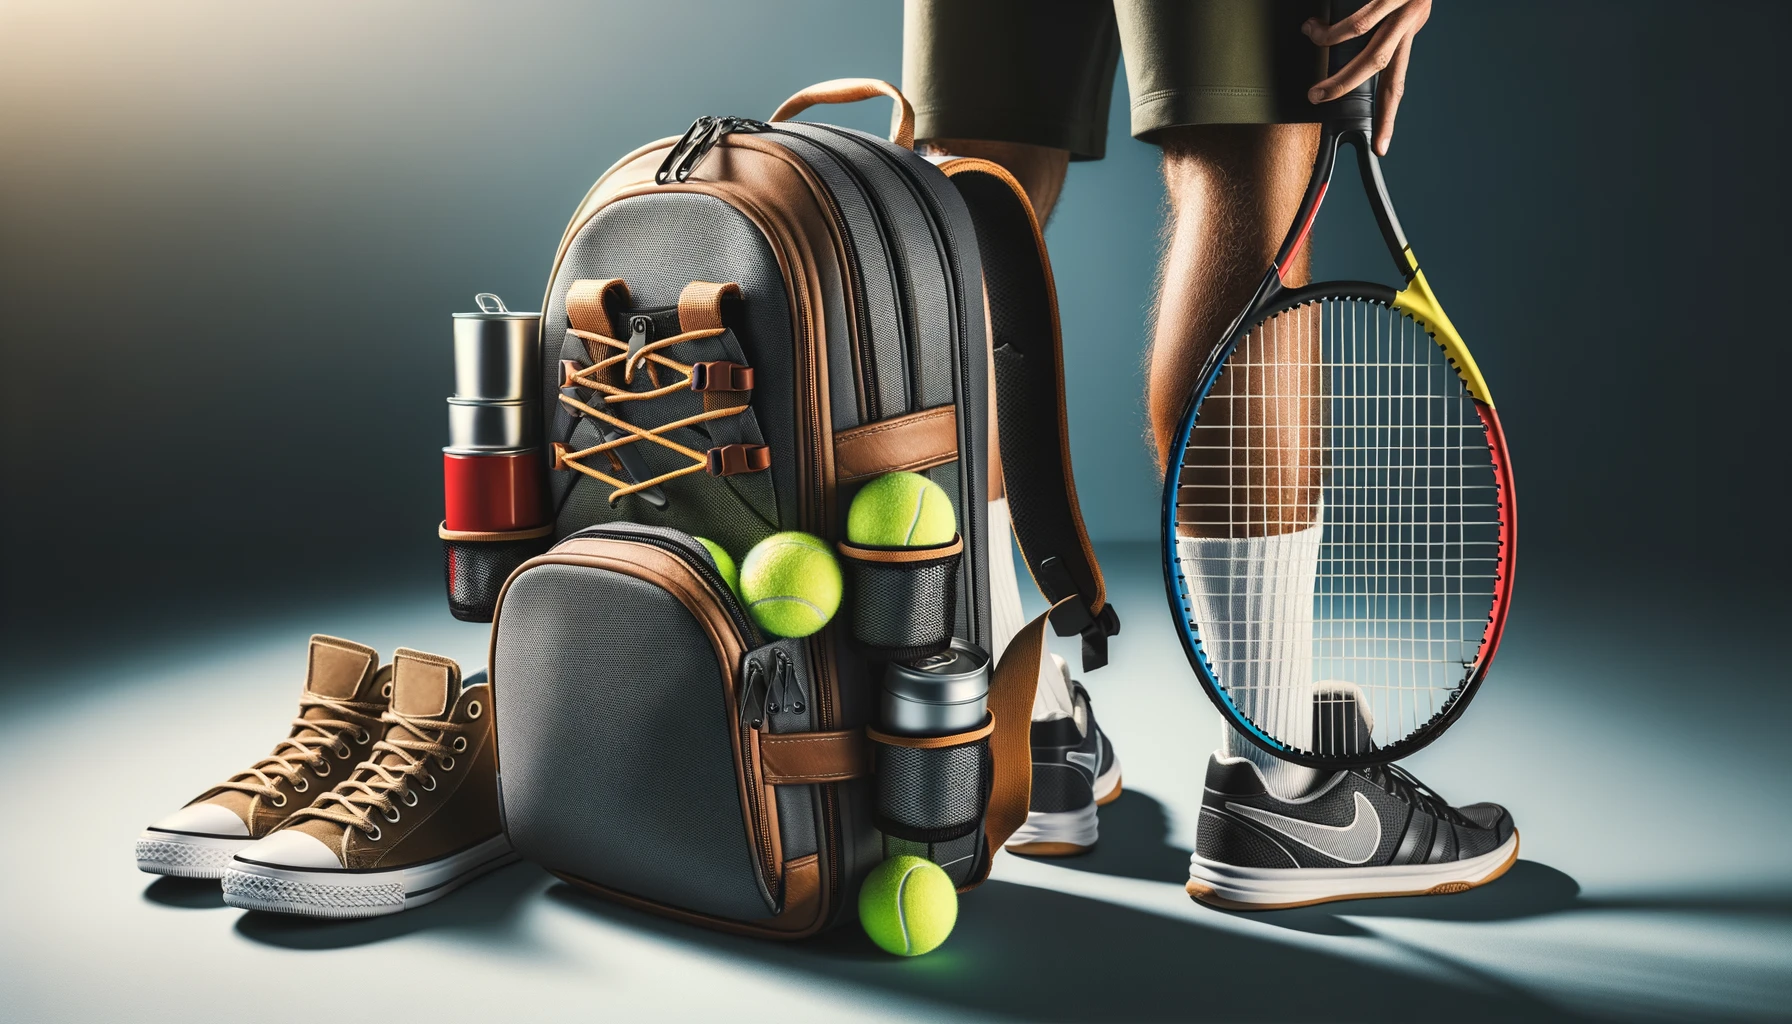 Foto des Rückens eines Tennisspielers, auf dem ein Tennisrucksack abgebildet ist. Der Rucksack enthält einen Schläger, eine Dose mit Tennisbällen und Schuhe.